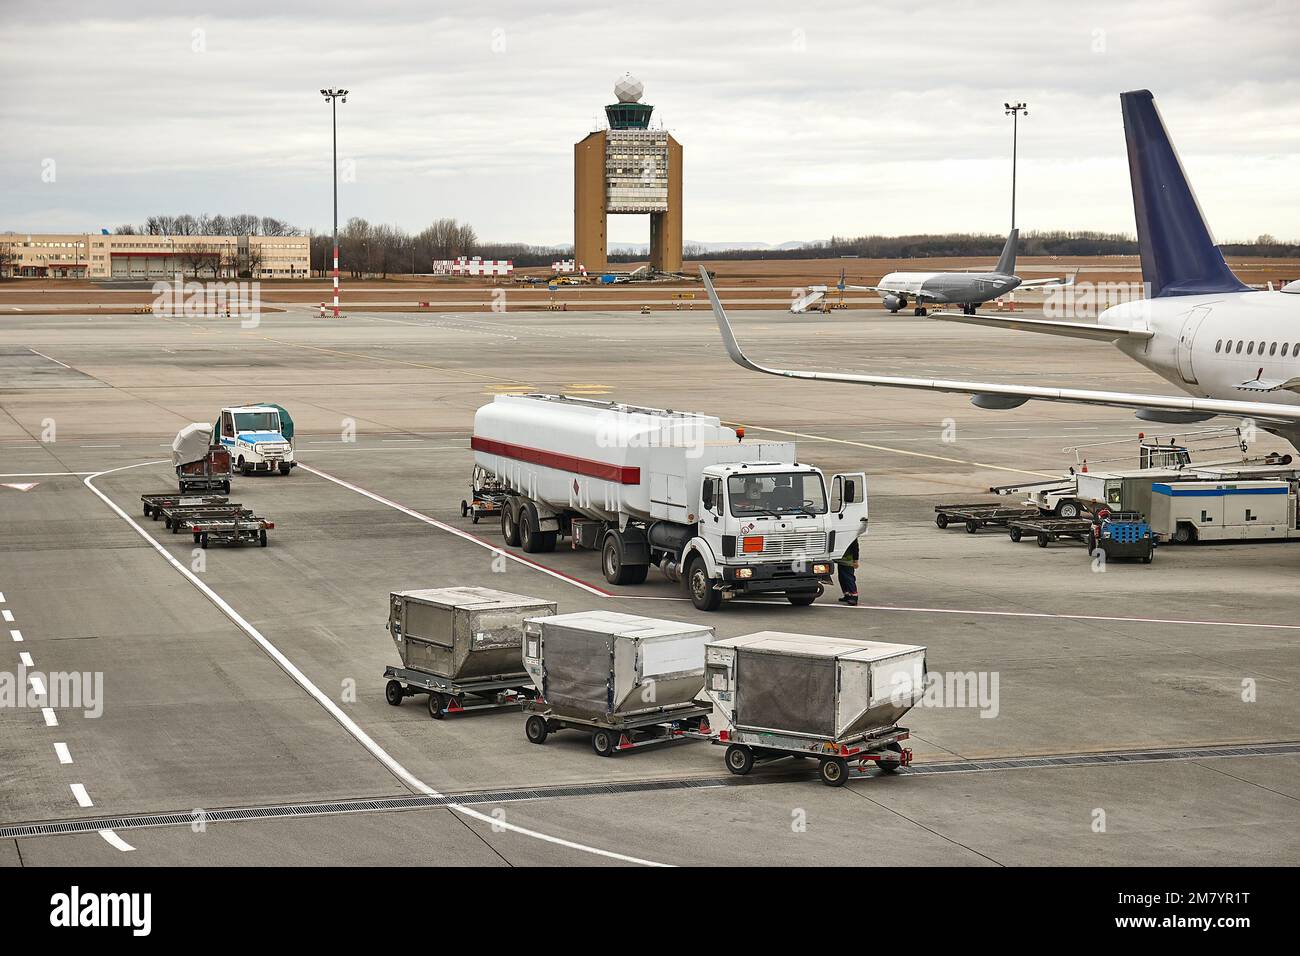 Camions à réservoir de carburant à un aéroport avec carburant à réaction Banque D'Images